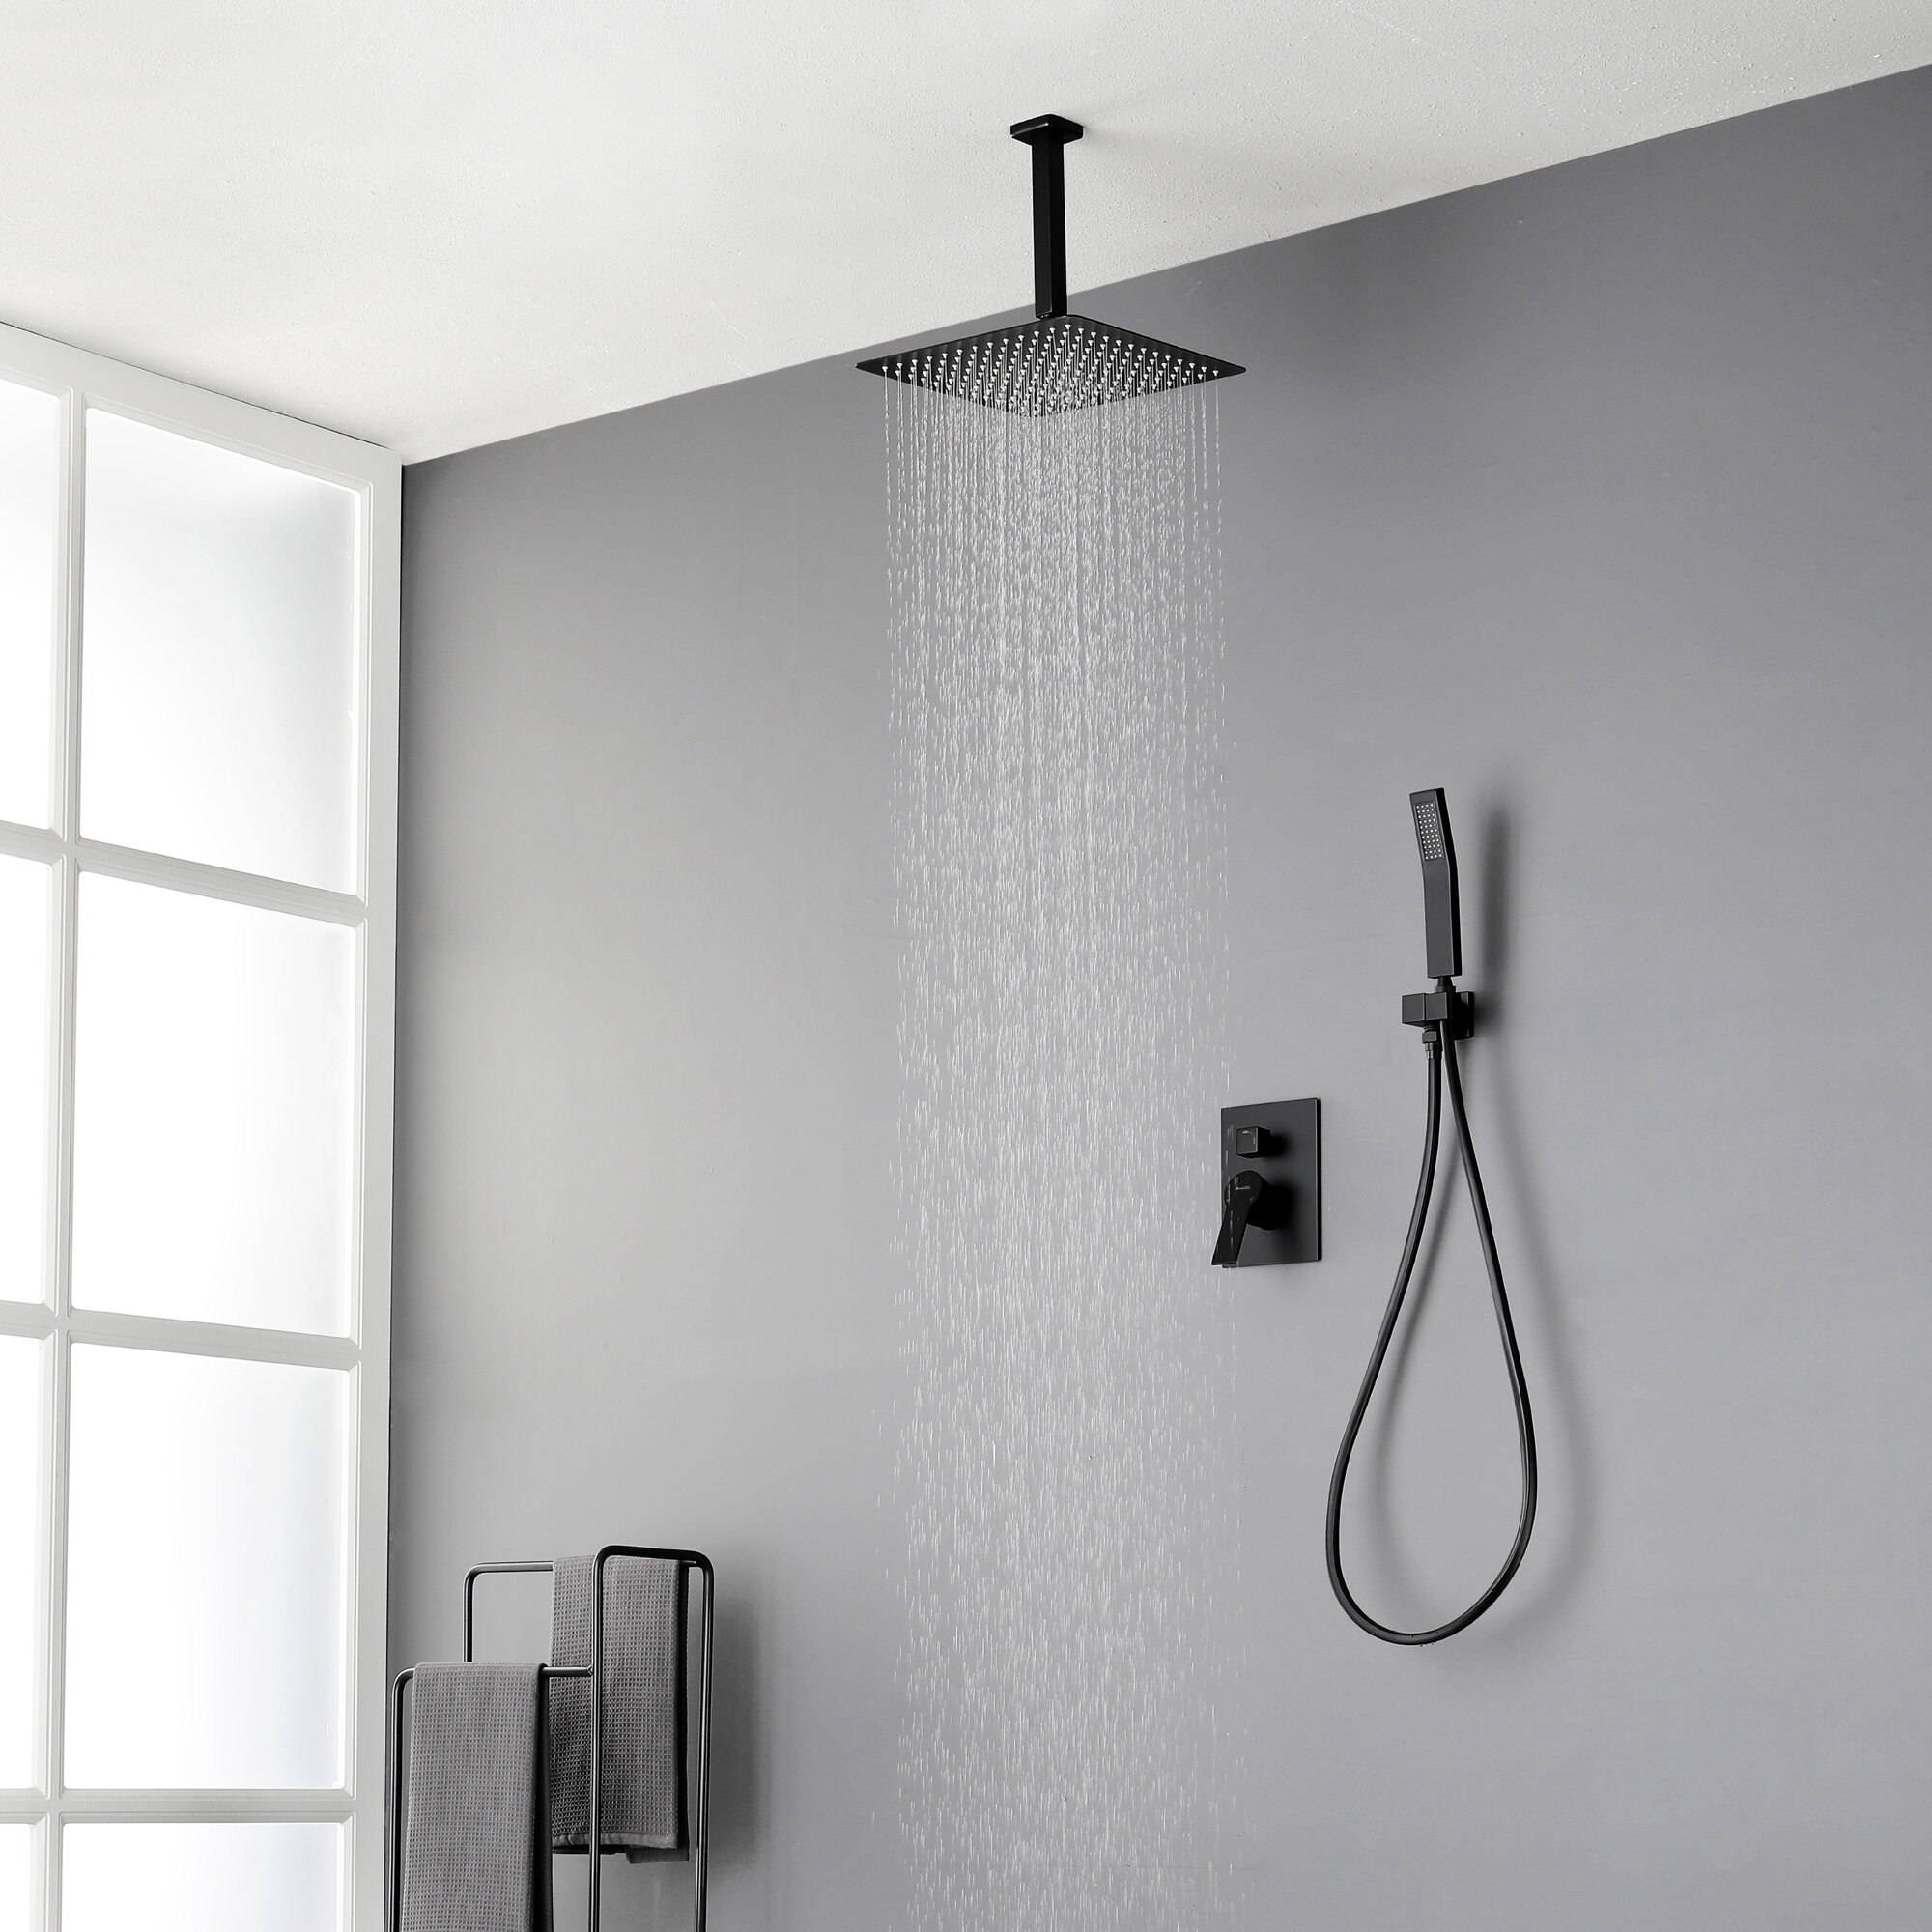 Black 12 Inch Shower Head Concealed Shower System Shower Set Rain Shower Hand Shower 